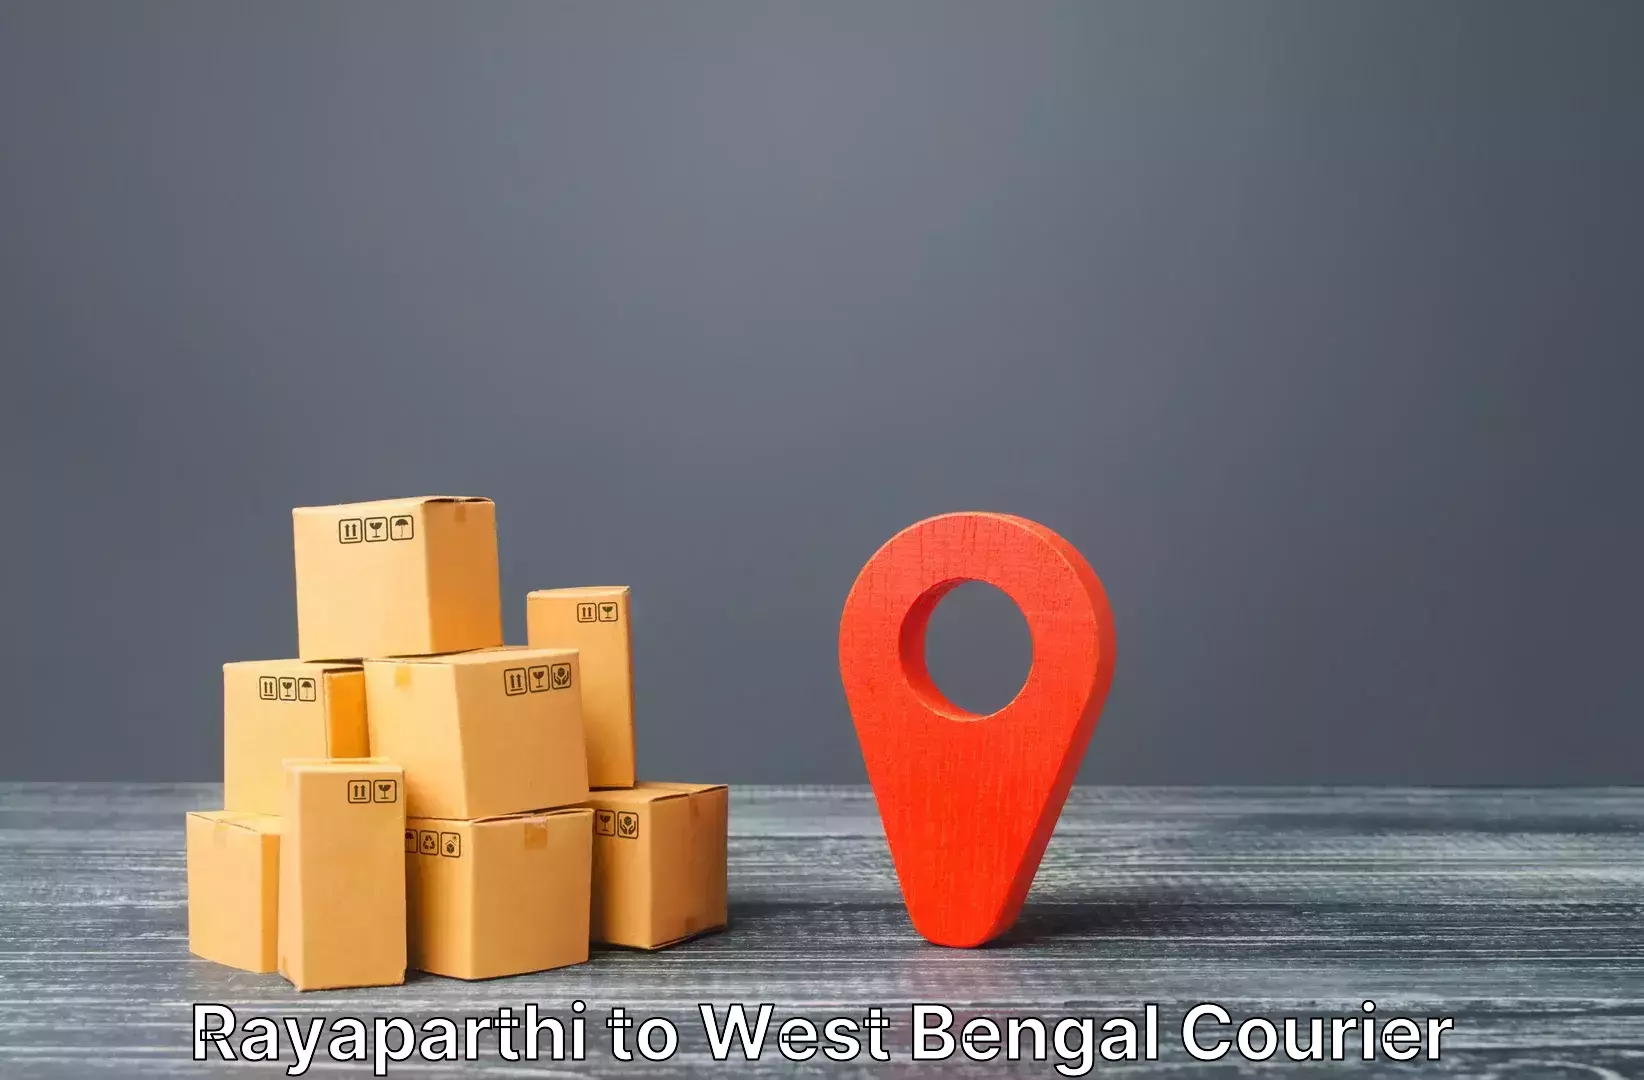 Baggage transport estimate Rayaparthi to Kolkata Port